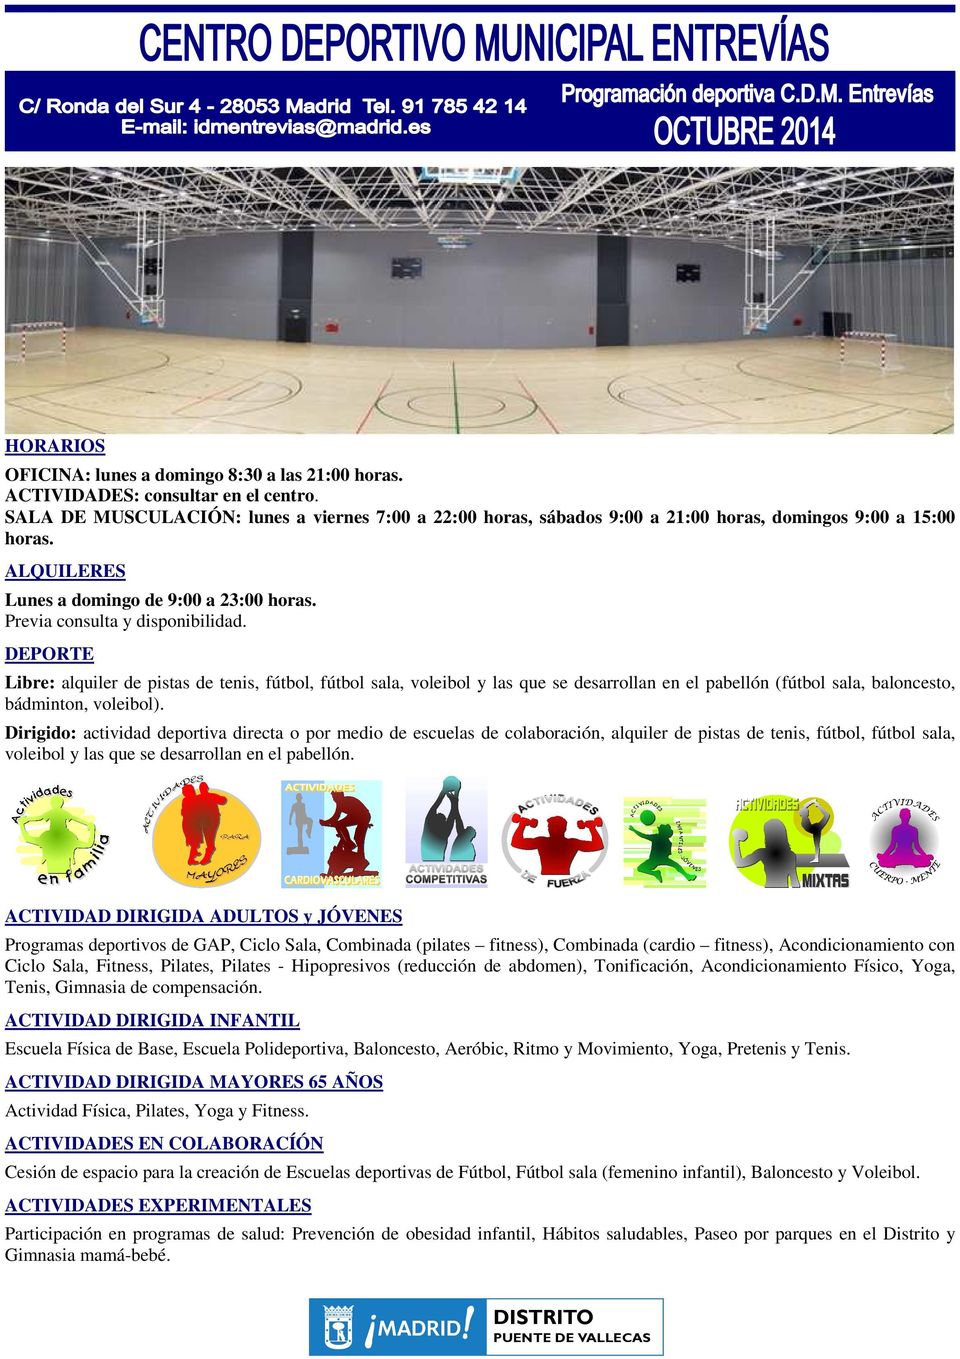 Libre: alquiler de pistas de tenis, fútbol, fútbol sala, voleibol y las que se desarrollan en el pabellón (fútbol sala, baloncesto, bádminton, voleibol).